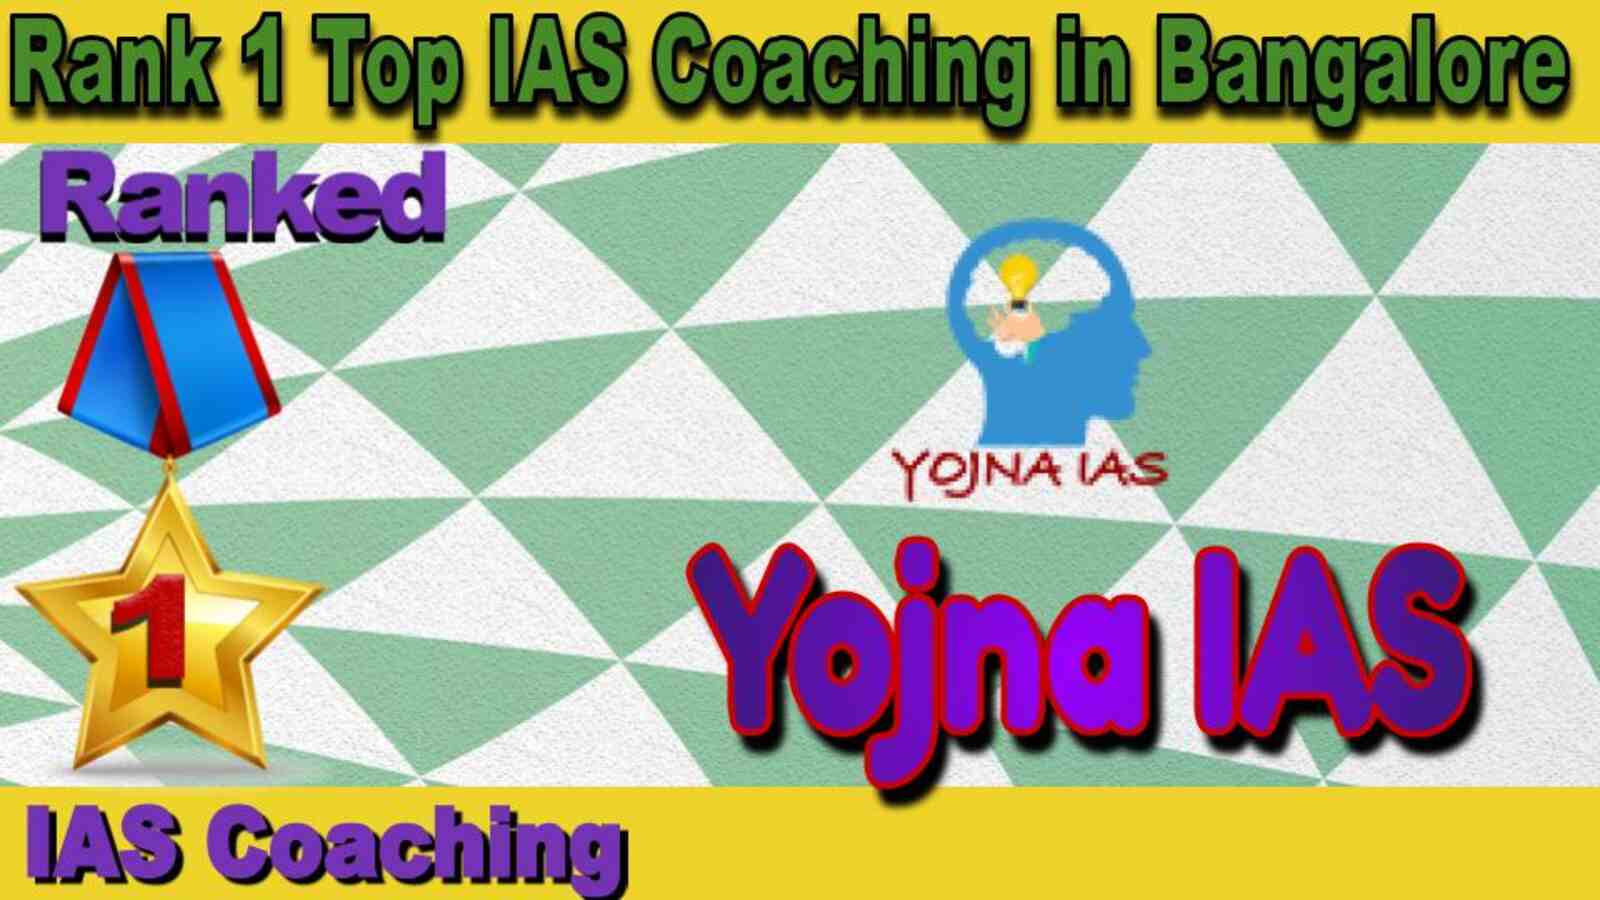 Top IAS Coaching in Bangalore. Best IAS Coaching in Bangalore. 